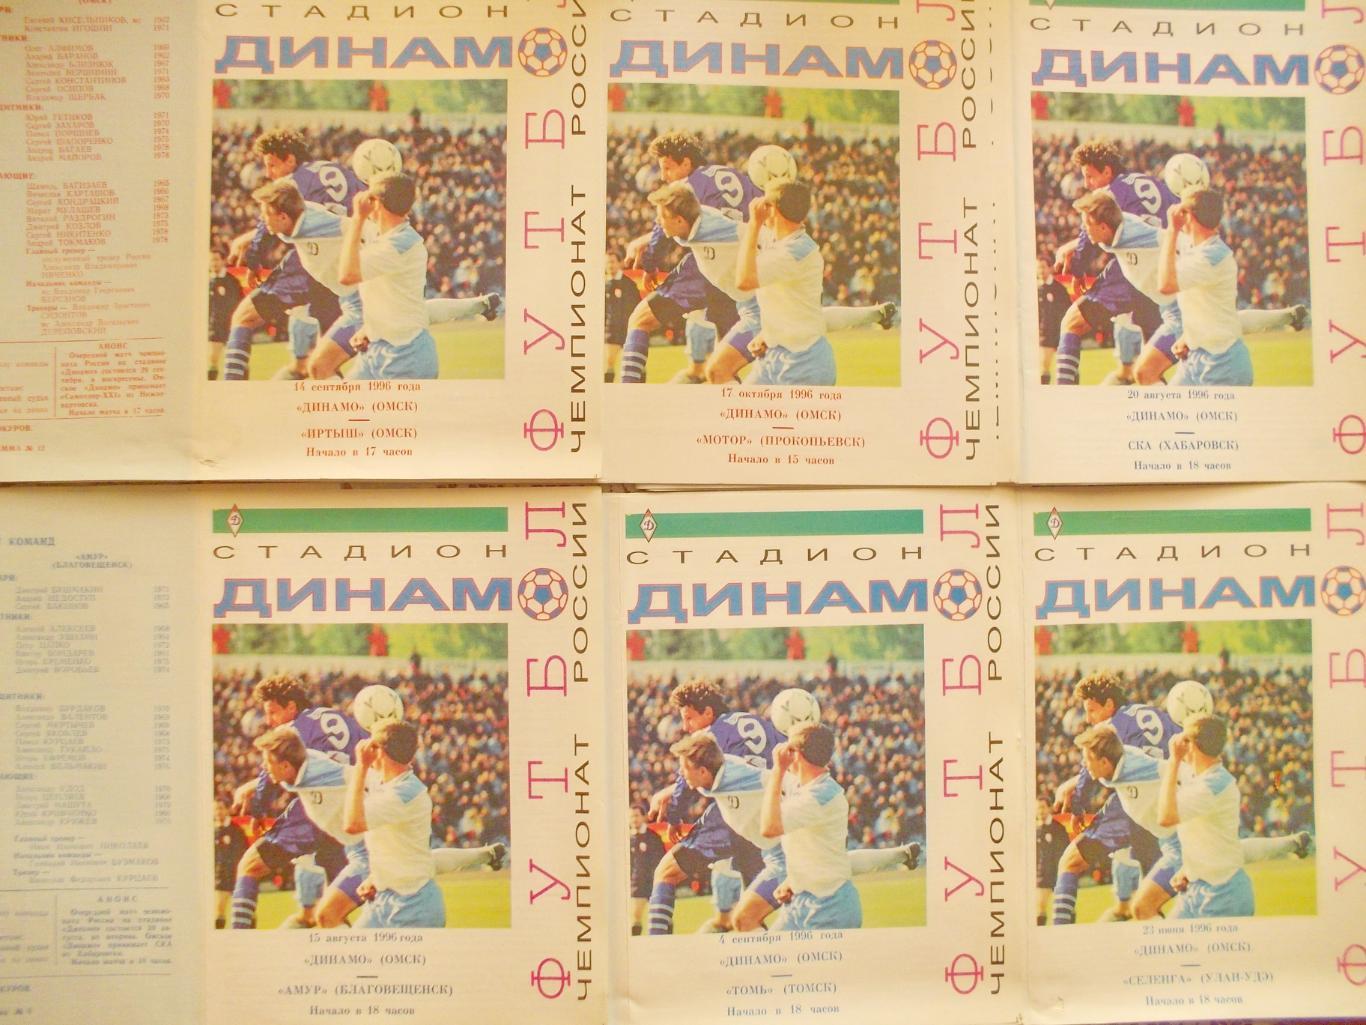 Еженедельник Футбол-Хоккей,1984 полный комплект. + 5 программ на выбор с фото. 1